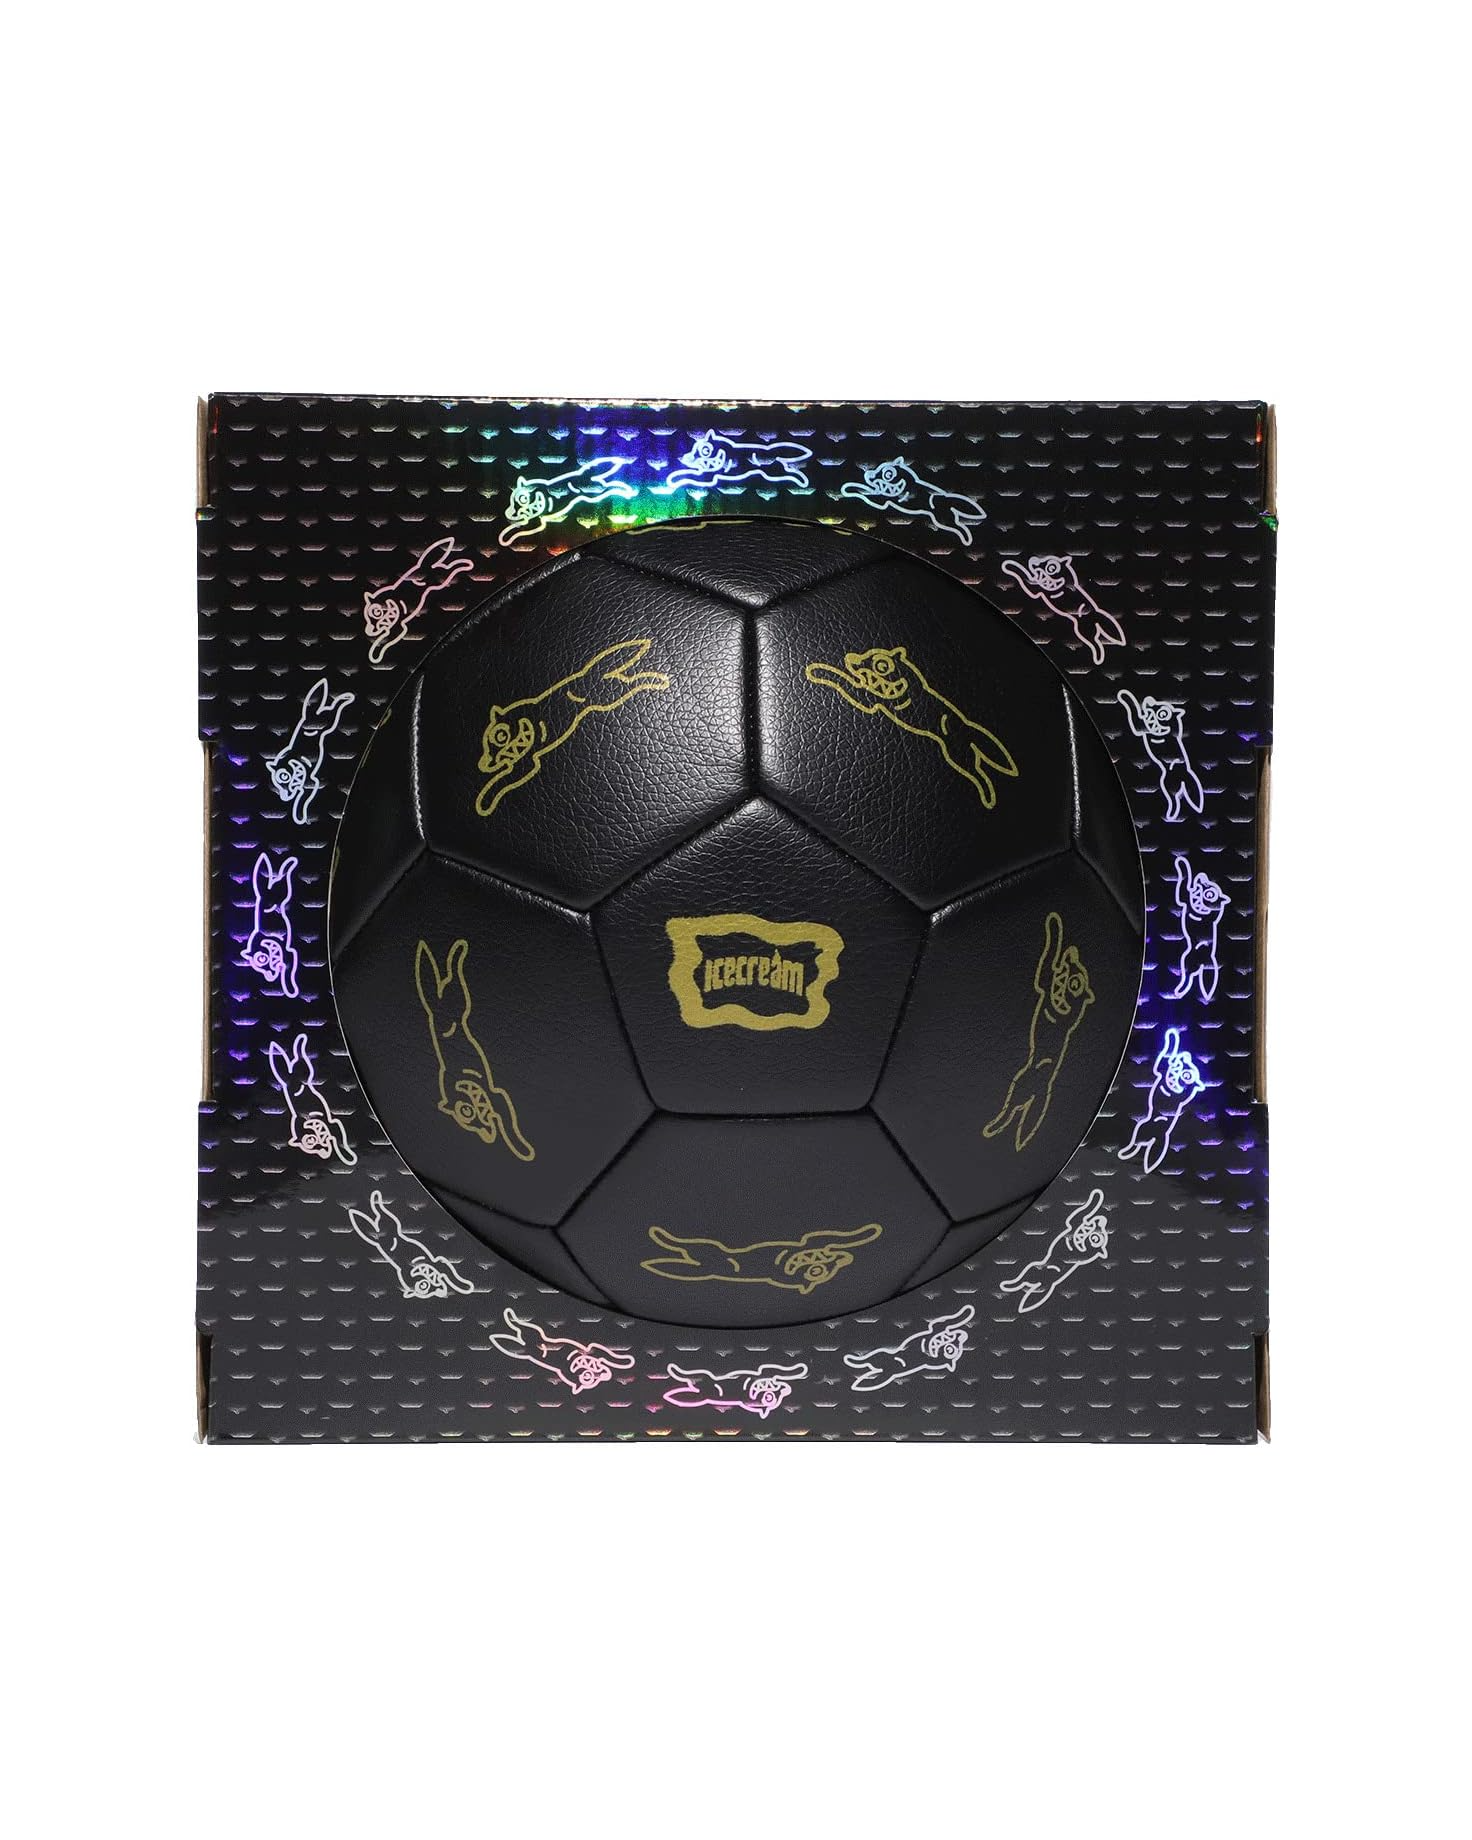 Icecream Goal Soccer Ball (Matte Black)